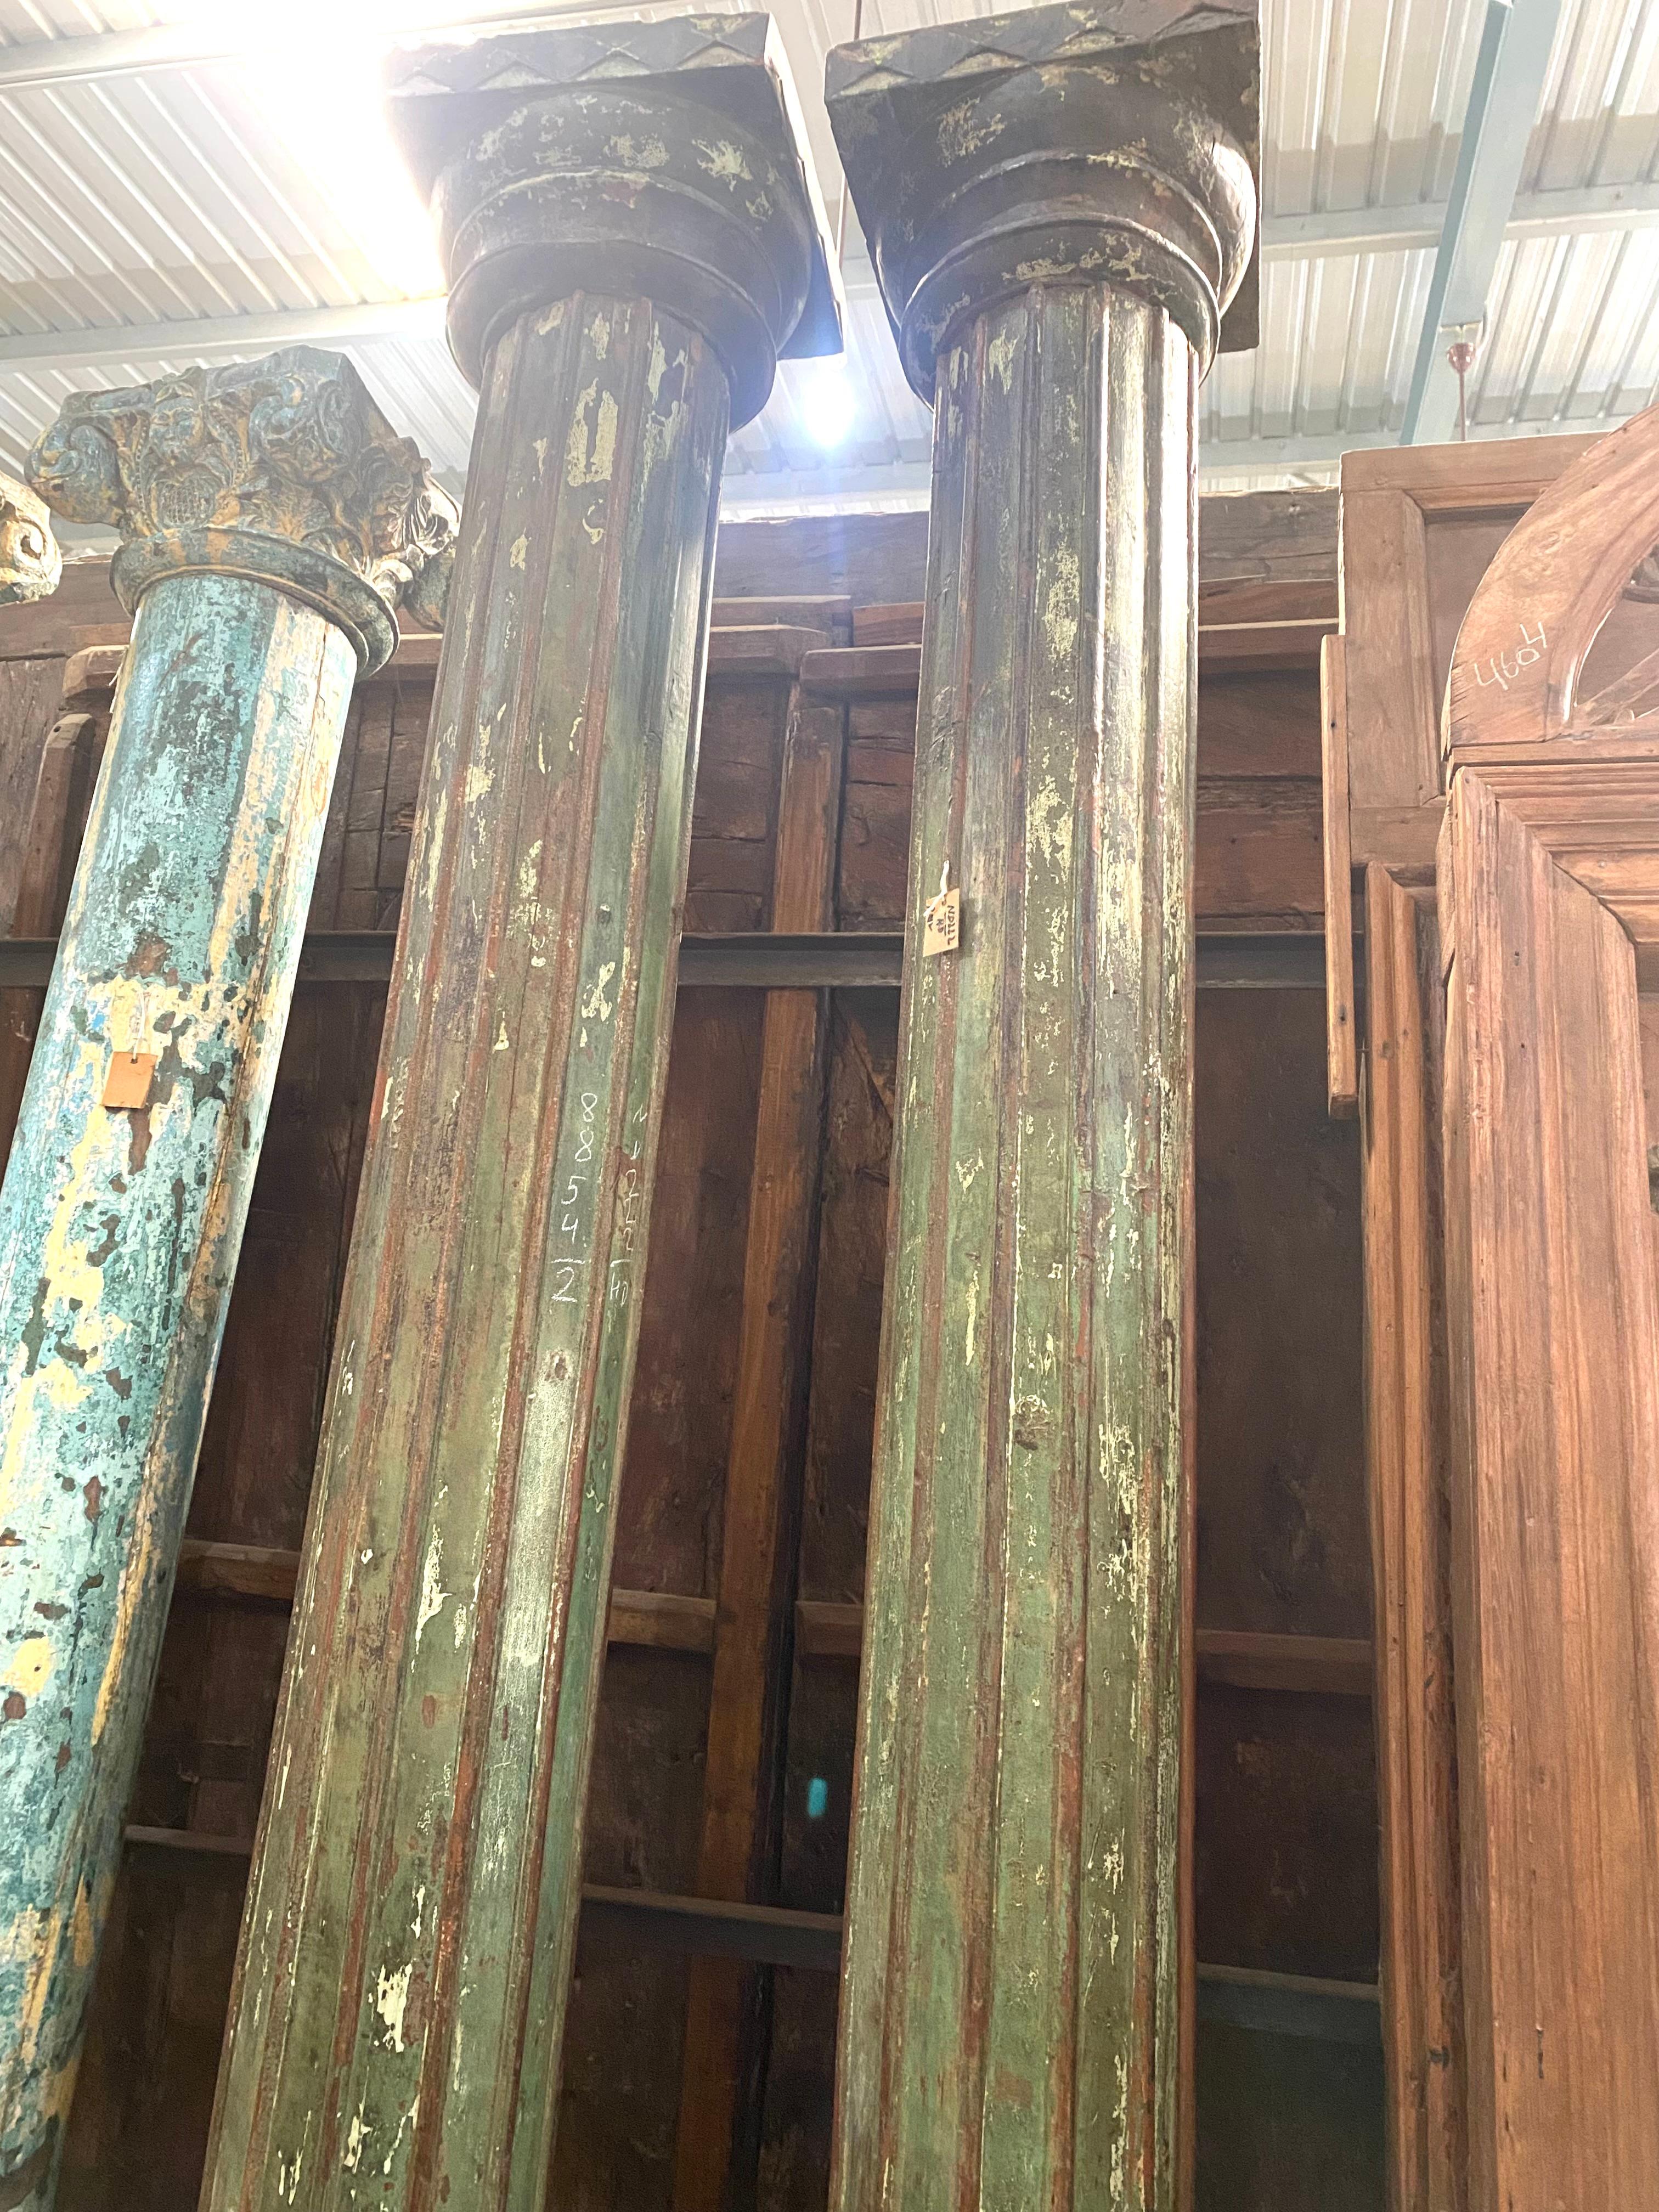 Dieses außergewöhnliche Paar von 2 Säulen ist aus Teakholz mit schöner Vintage-Patina gefertigt. Die Kapitelle und die steinerne Basis weisen geritzte geometrische Paternale auf.
Jede Säule besteht aus 3 Teilen: einer Granitbasis, einer Säule und